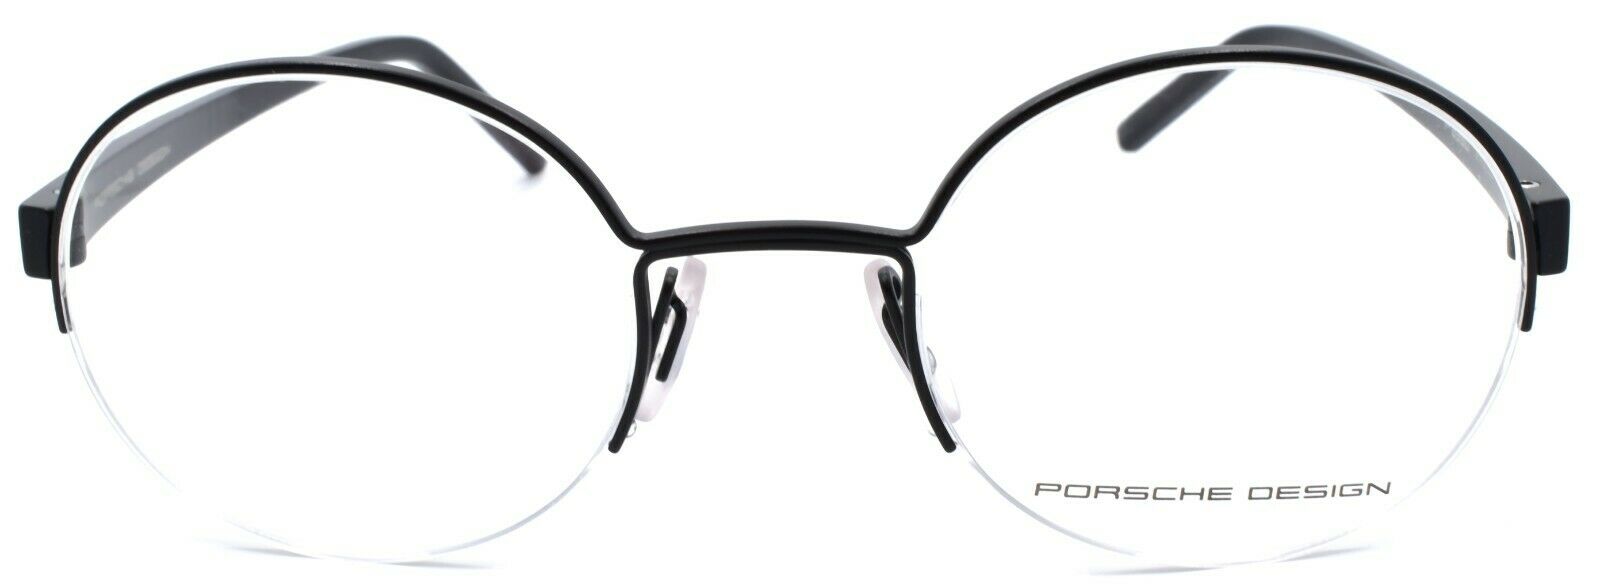 2-Porsche Design P8350 A Eyeglasses Frames Half-rim Round 50-22-145 Black-4046901603984-IKSpecs